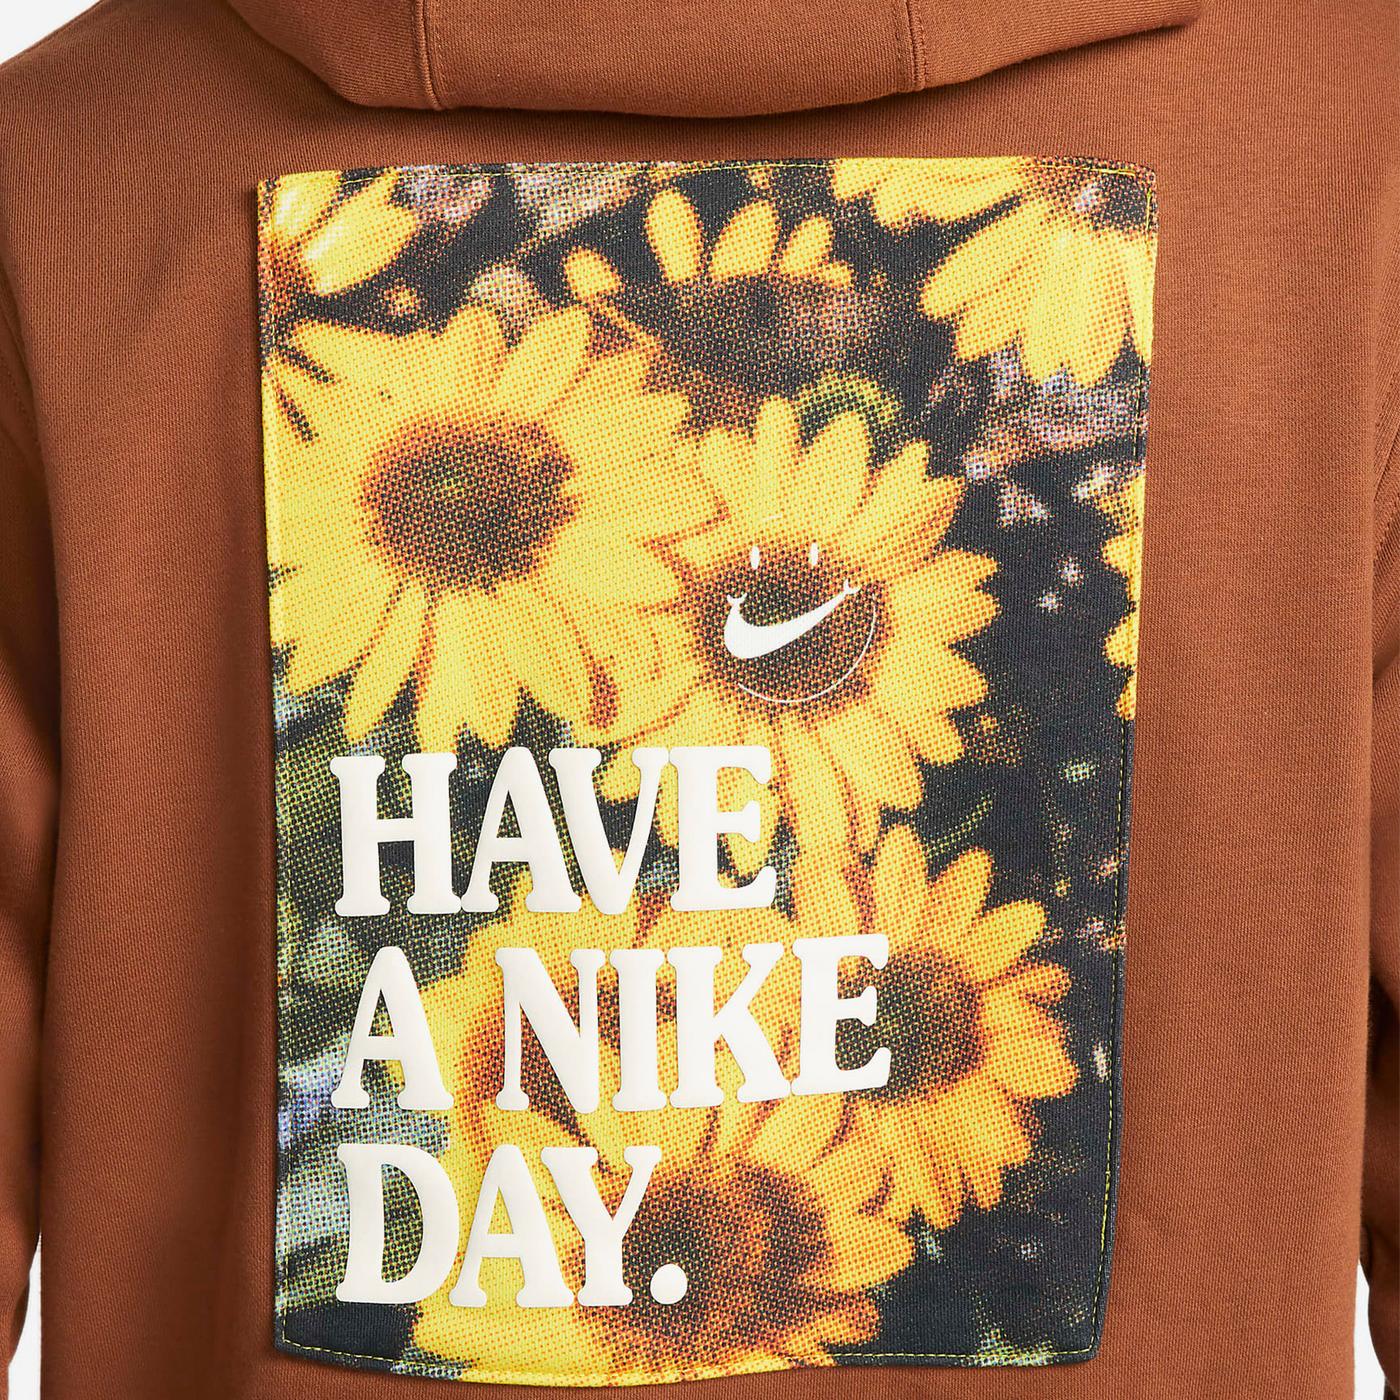 Nike Erkek Kahverengi Kapüşonlu Sweatshirt